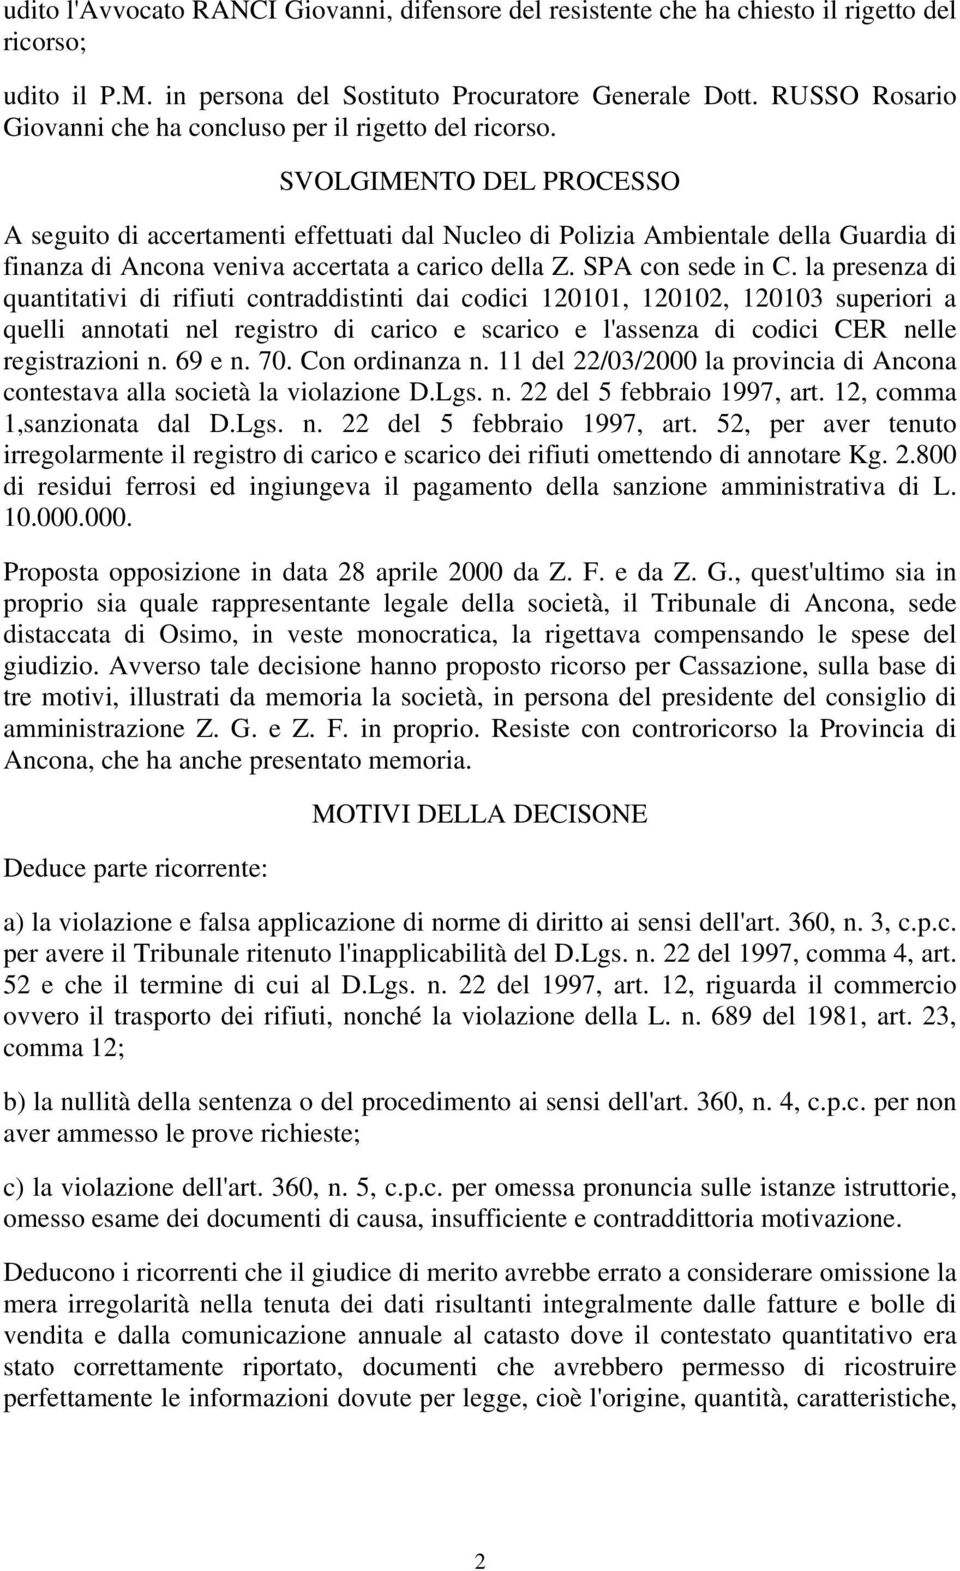 SVOLGIMENTO DEL PROCESSO A seguito di accertamenti effettuati dal Nucleo di Polizia Ambientale della Guardia di finanza di Ancona veniva accertata a carico della Z. SPA con sede in C.